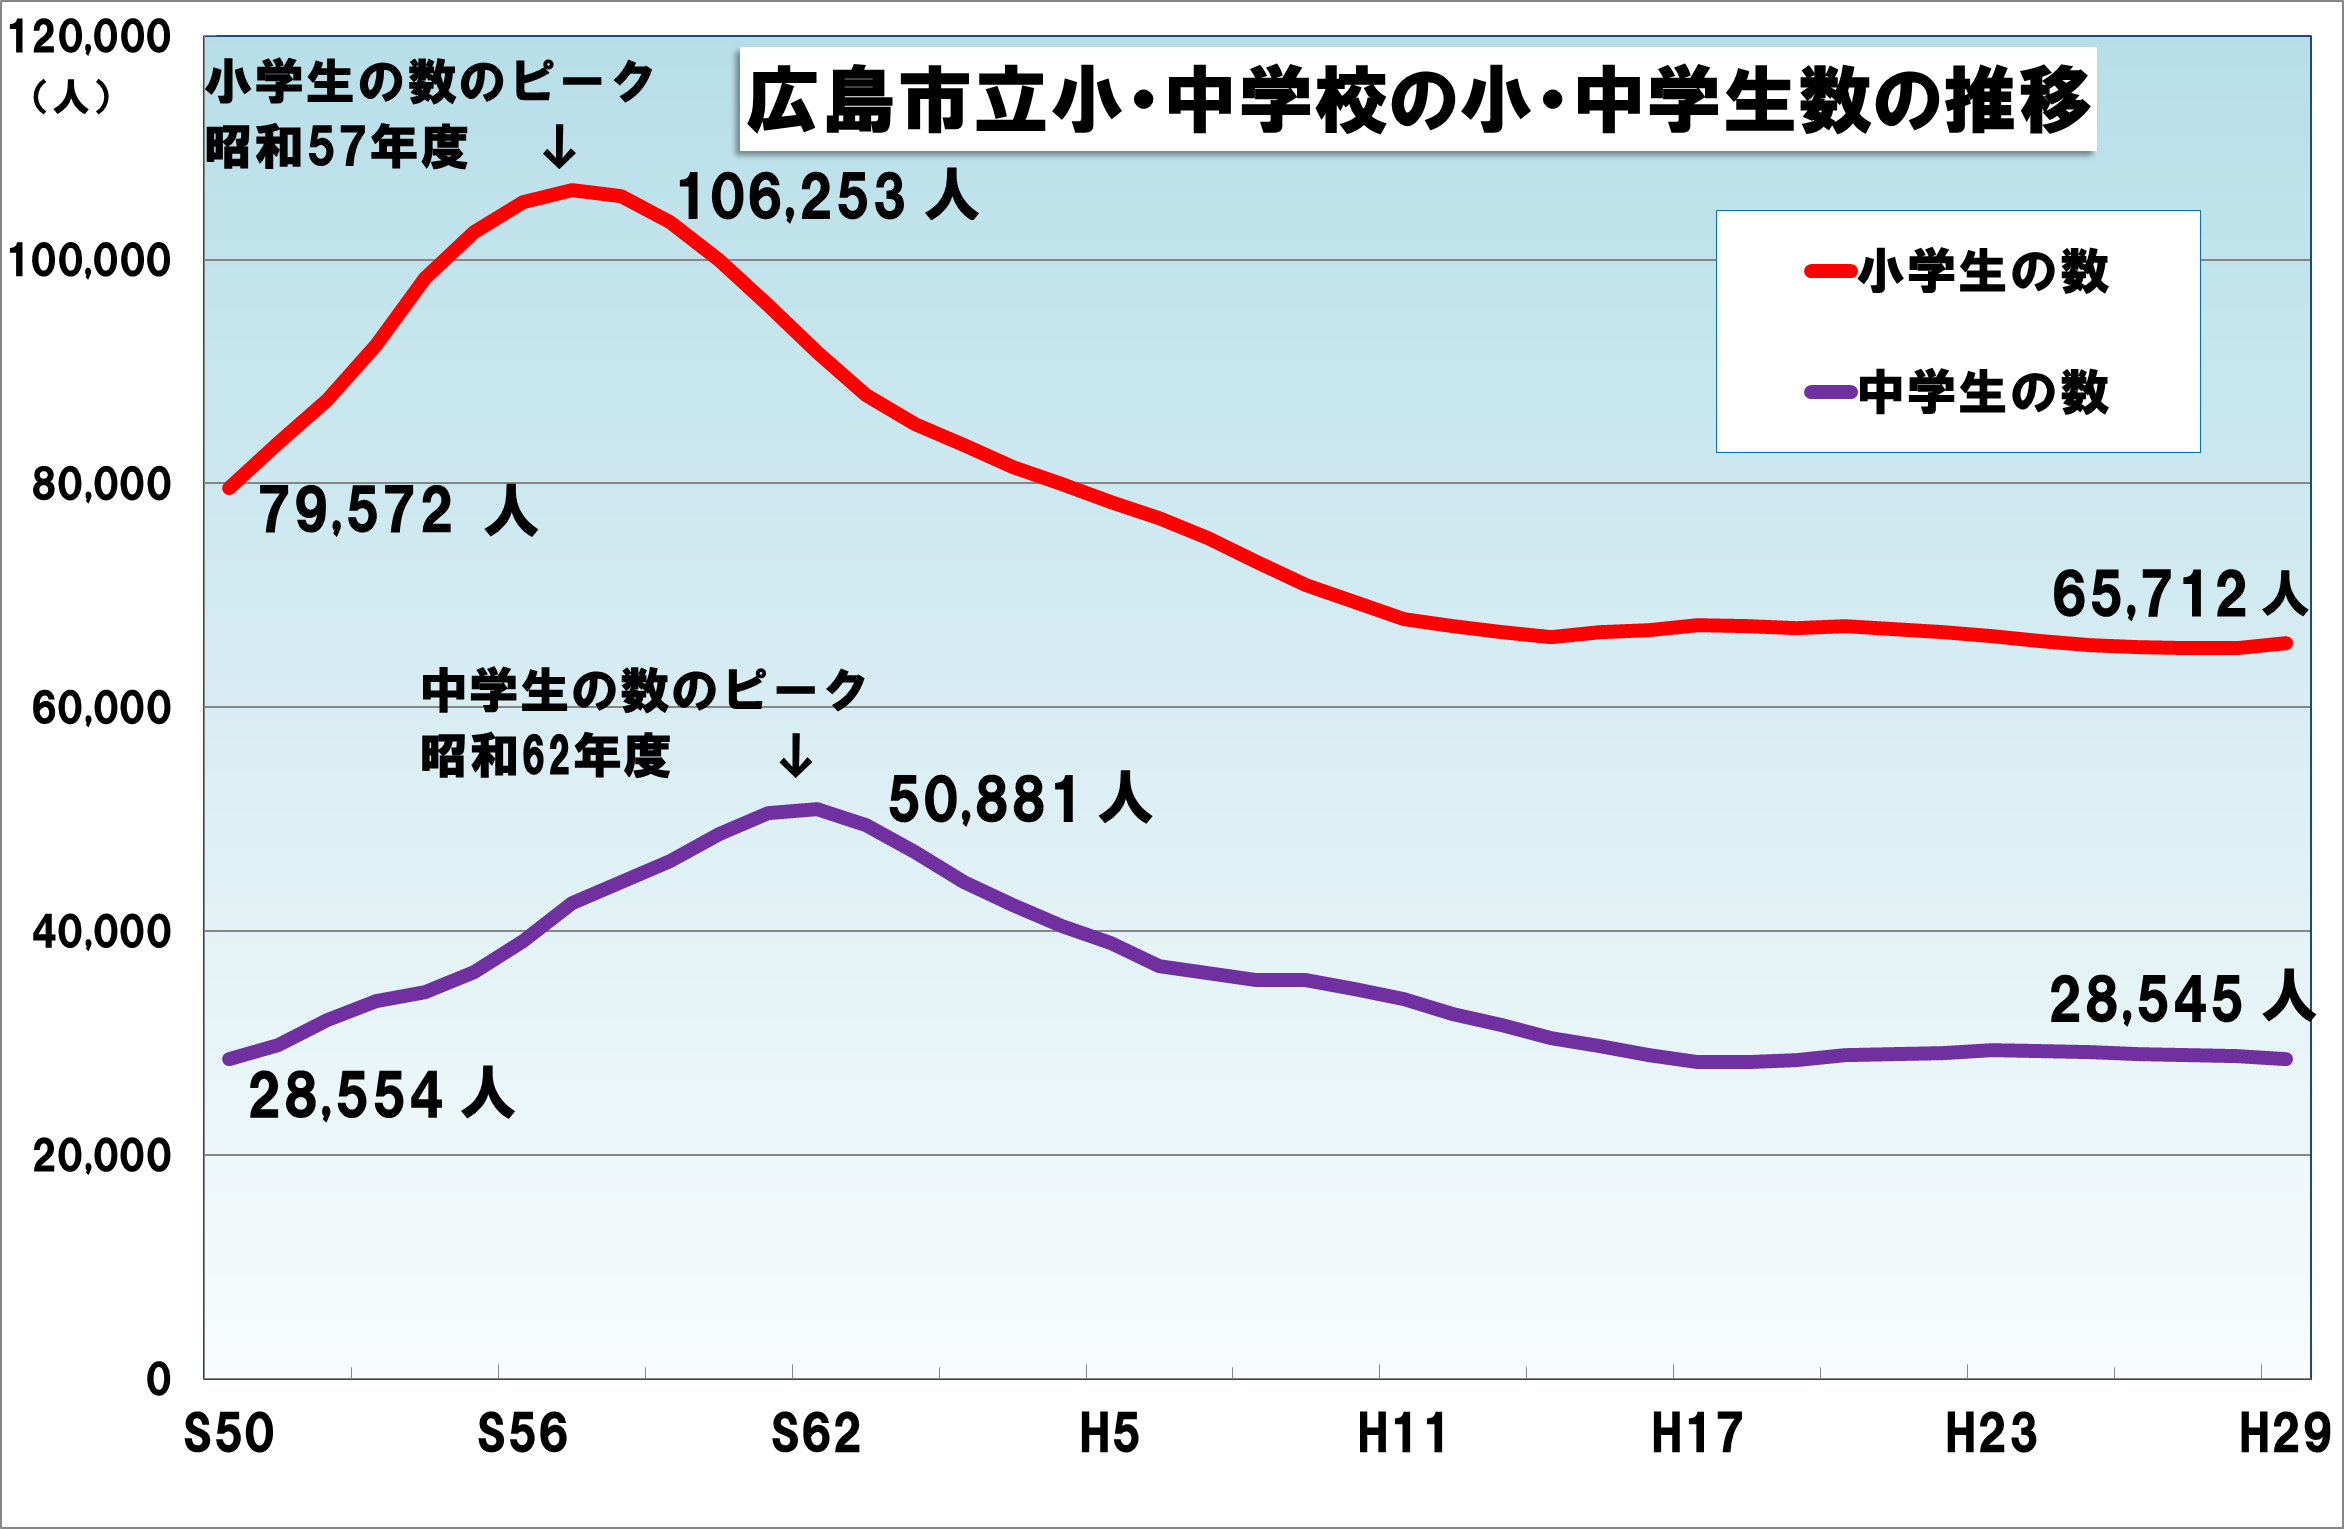 広島市立小中学校の児童生徒数の推移を示した表